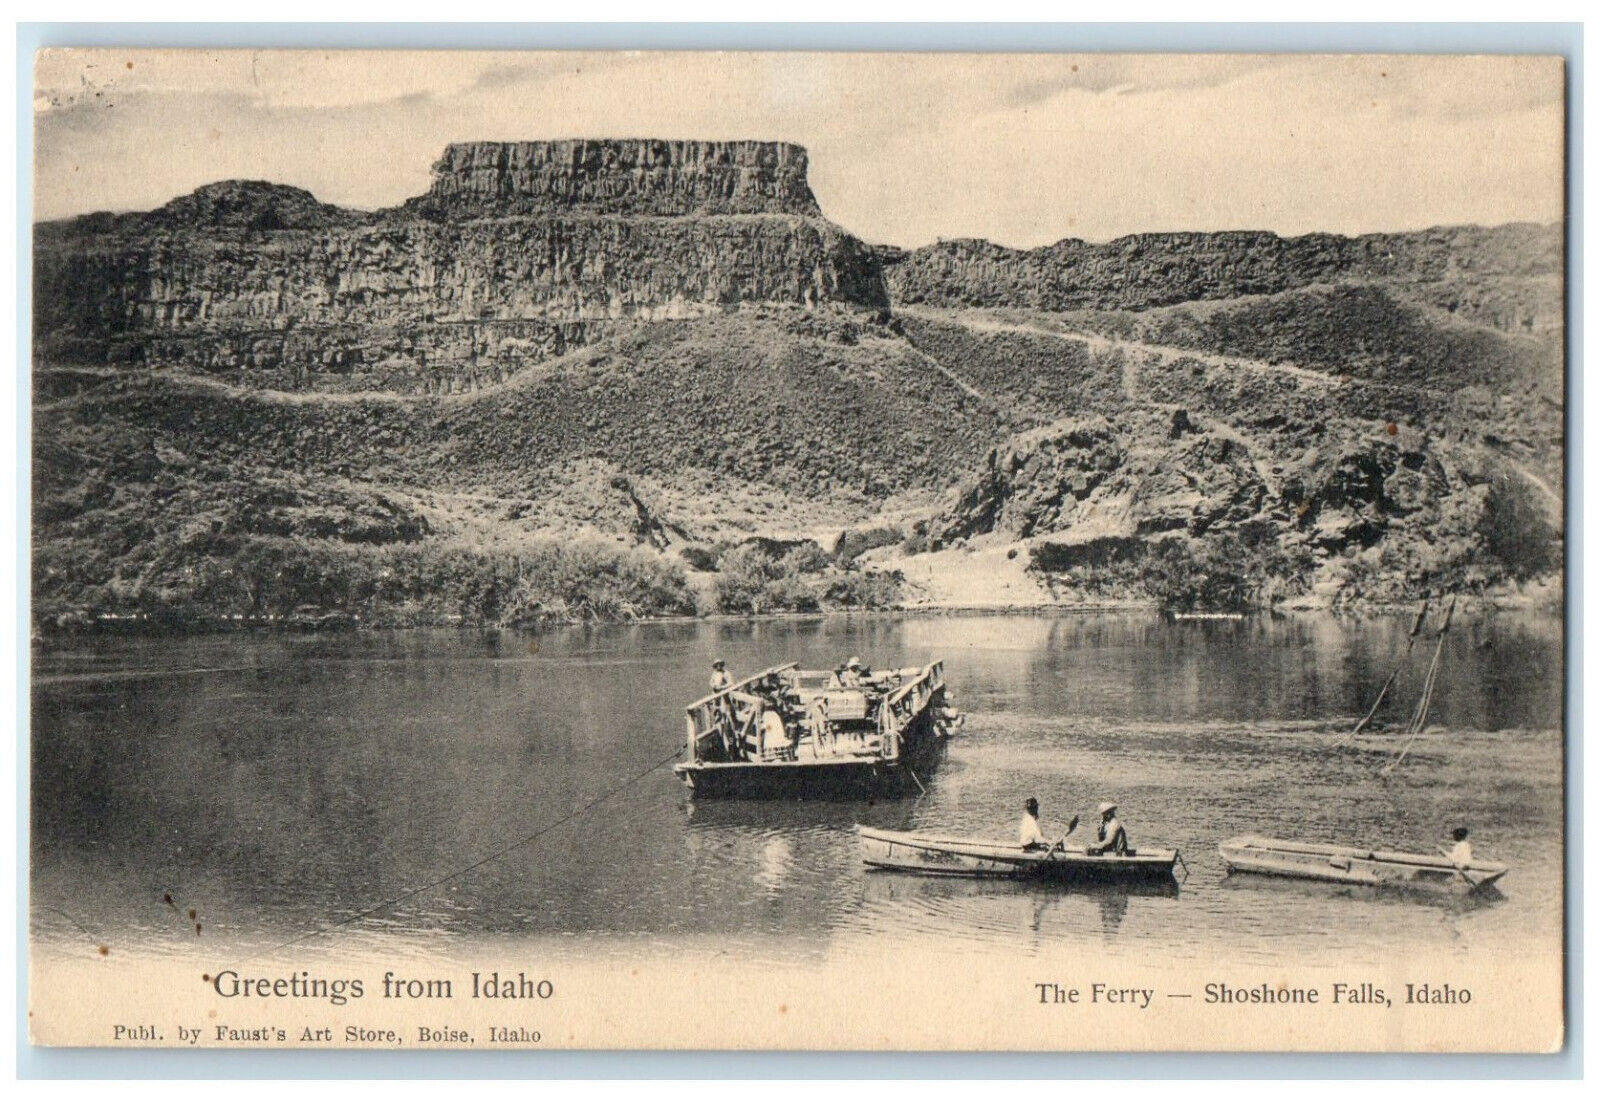 c1905 The Ferry Shoshone Falls Idaho ID Greetings from Idaho Postcard